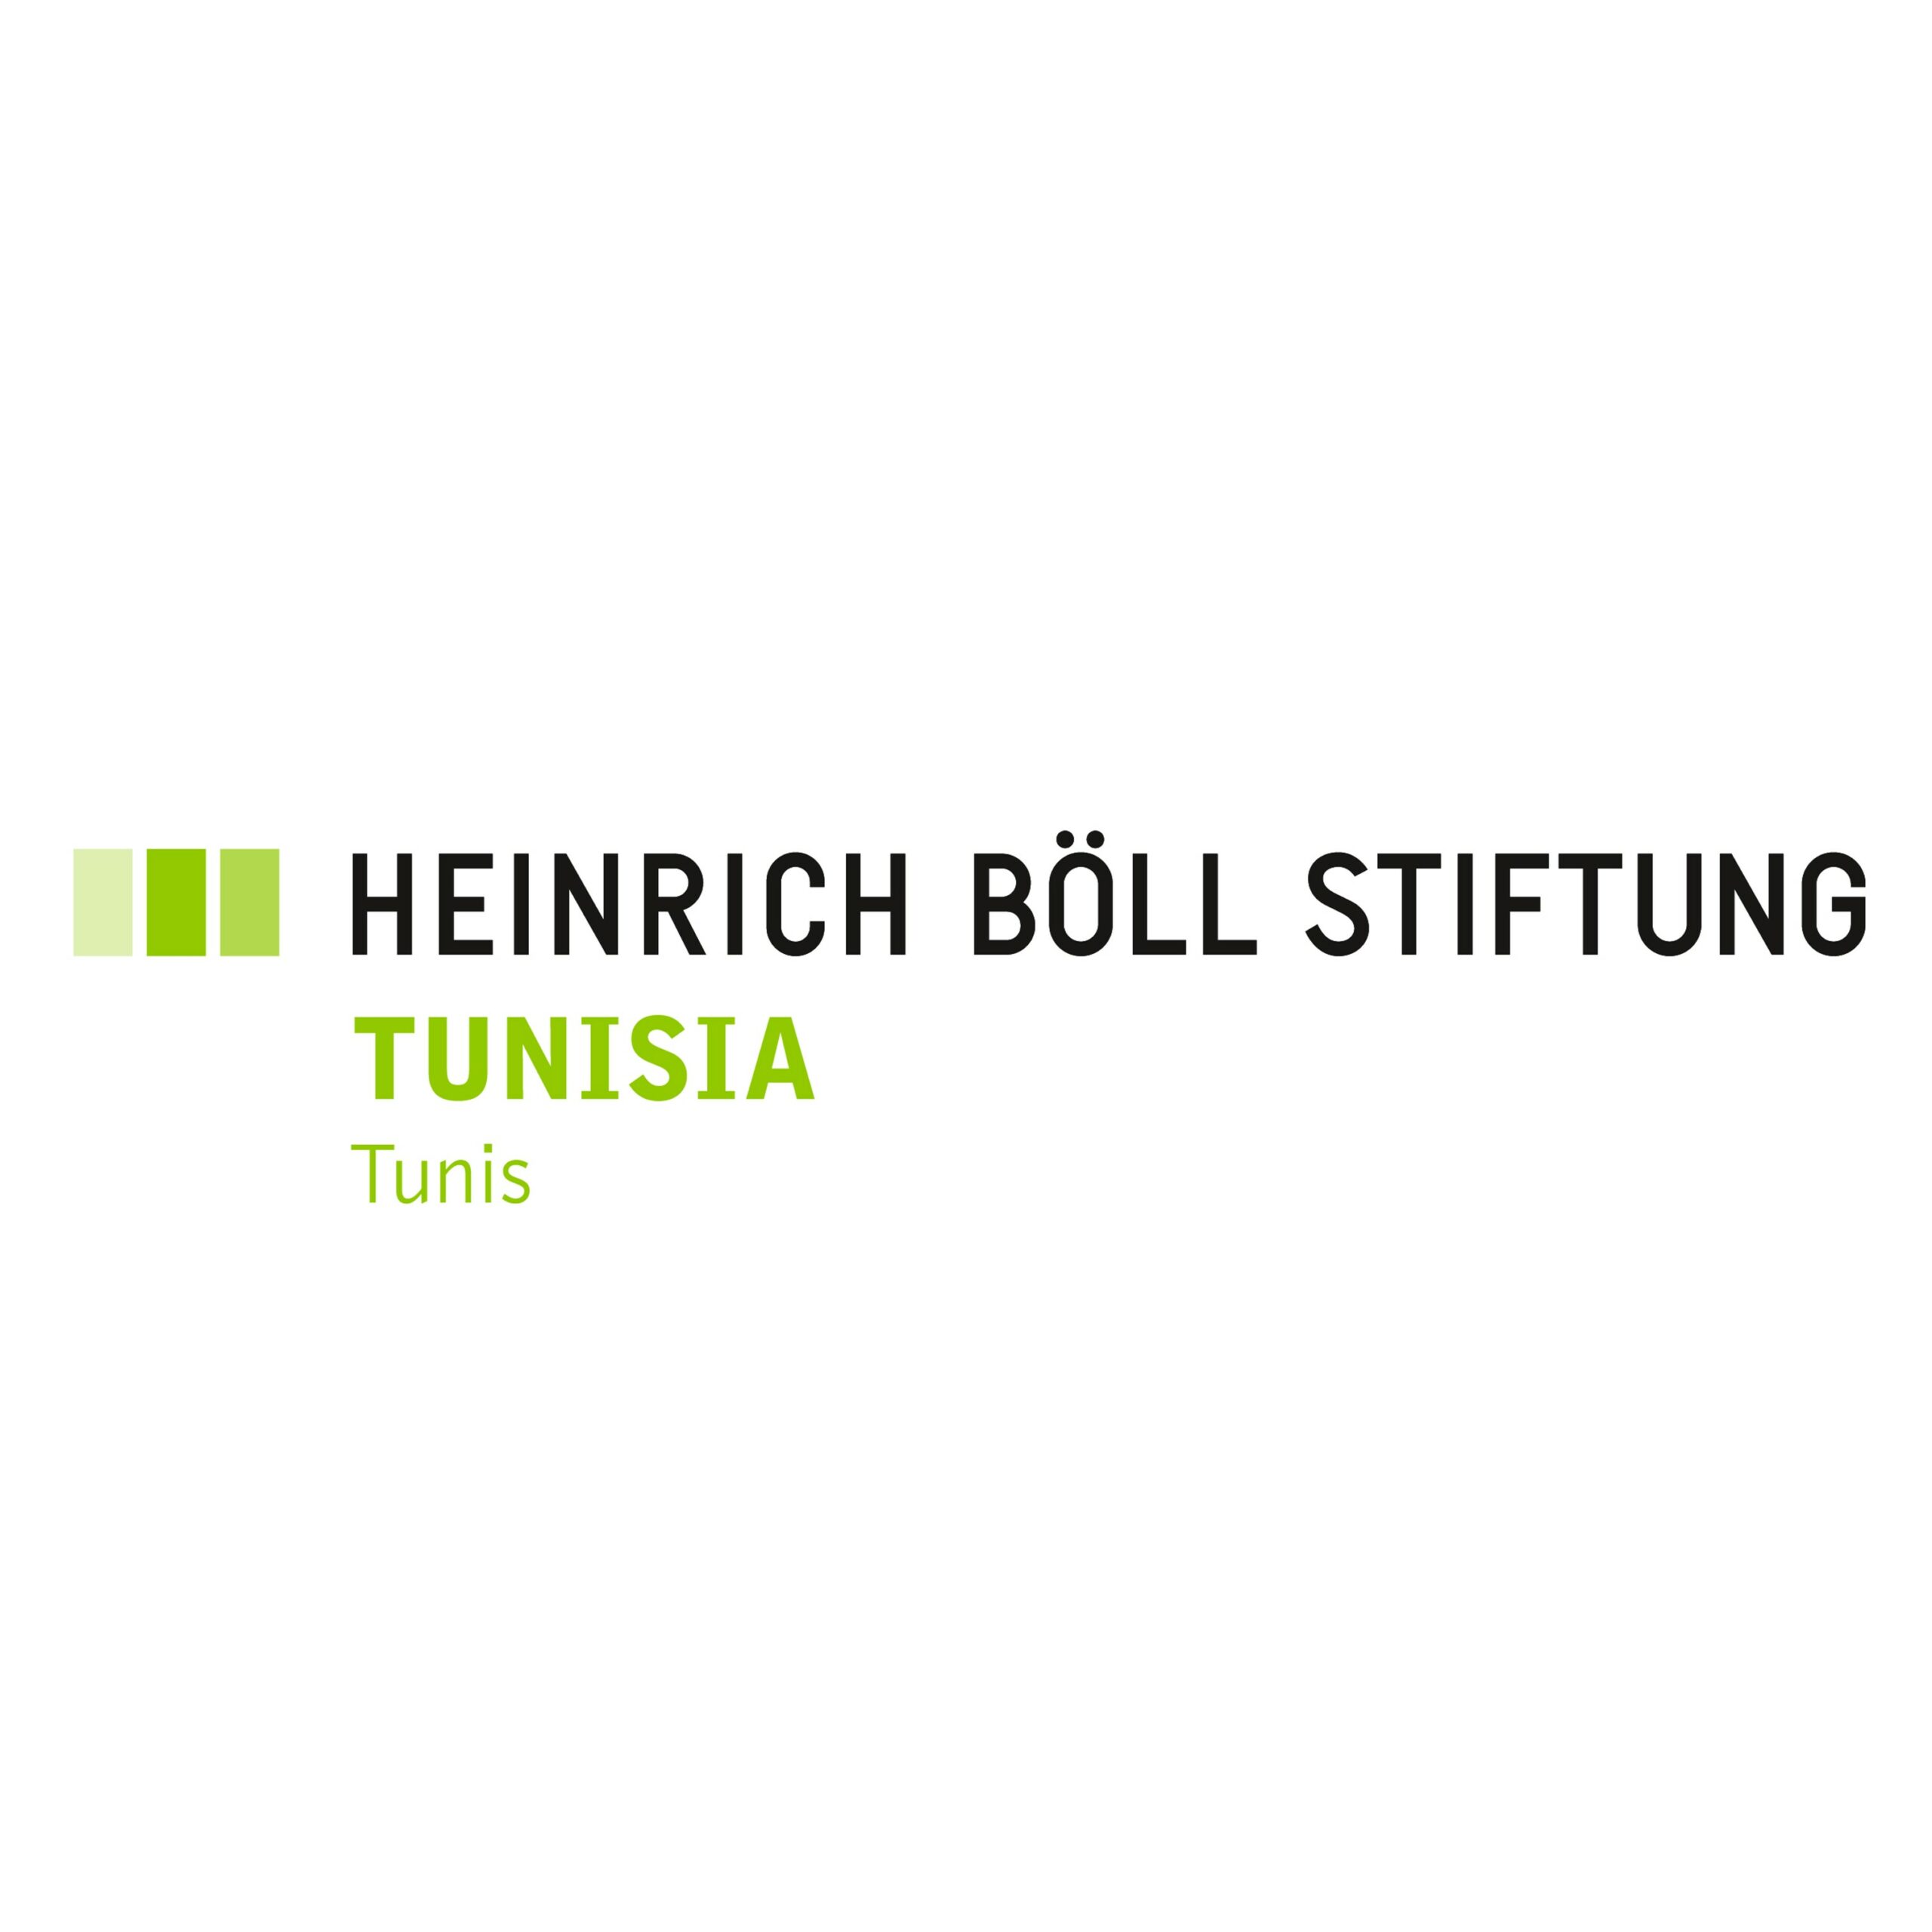 HEINRICH-BOELL-FOUNDATION